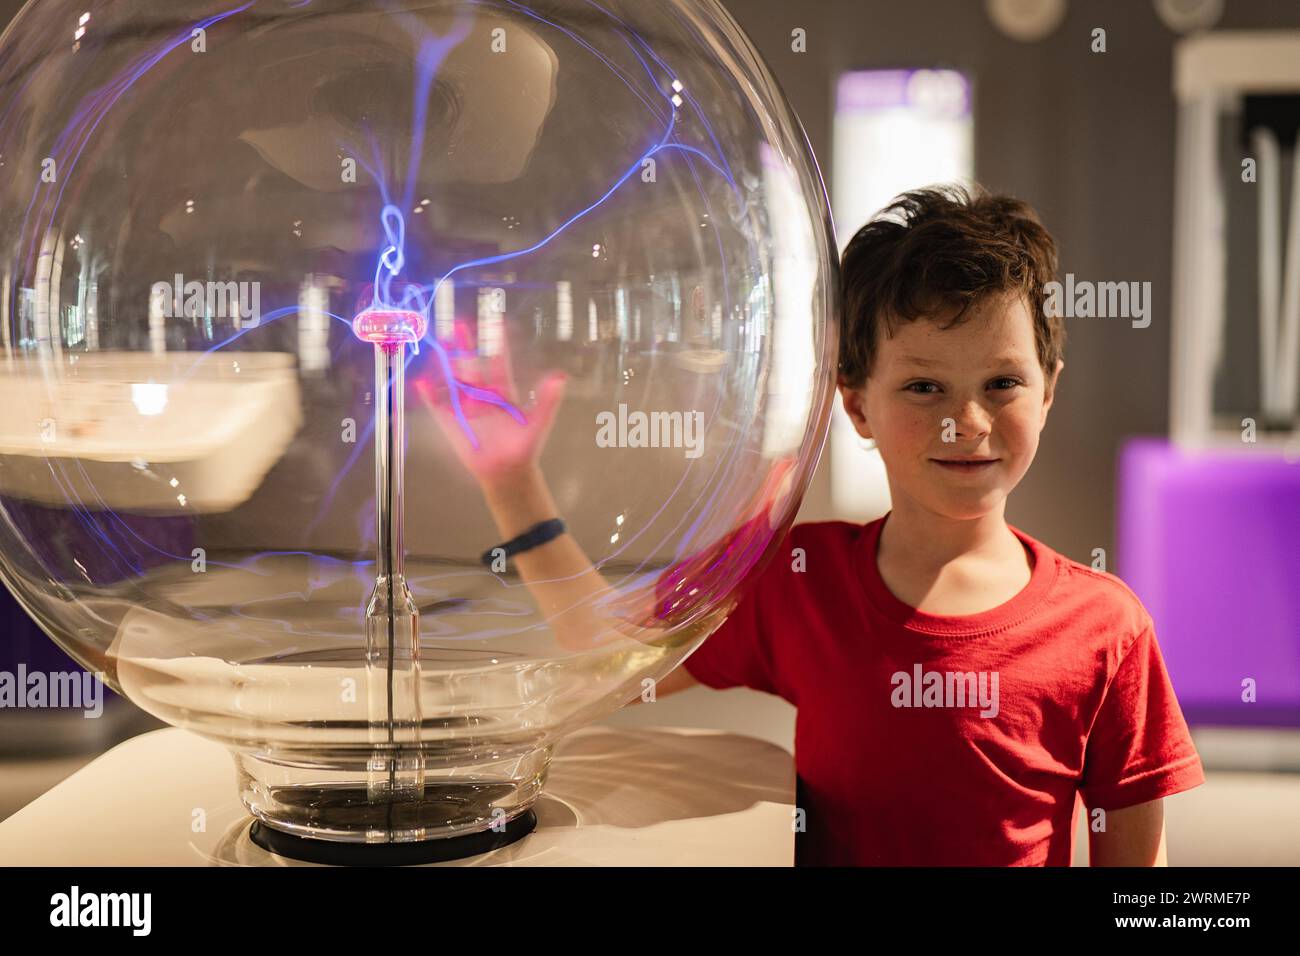 Un garçon curieux dans une chemise rouge semble étonné par une exposition de globe à plasma dans un musée des sciences, sa main interagissant avec l'électricité statique. Banque D'Images